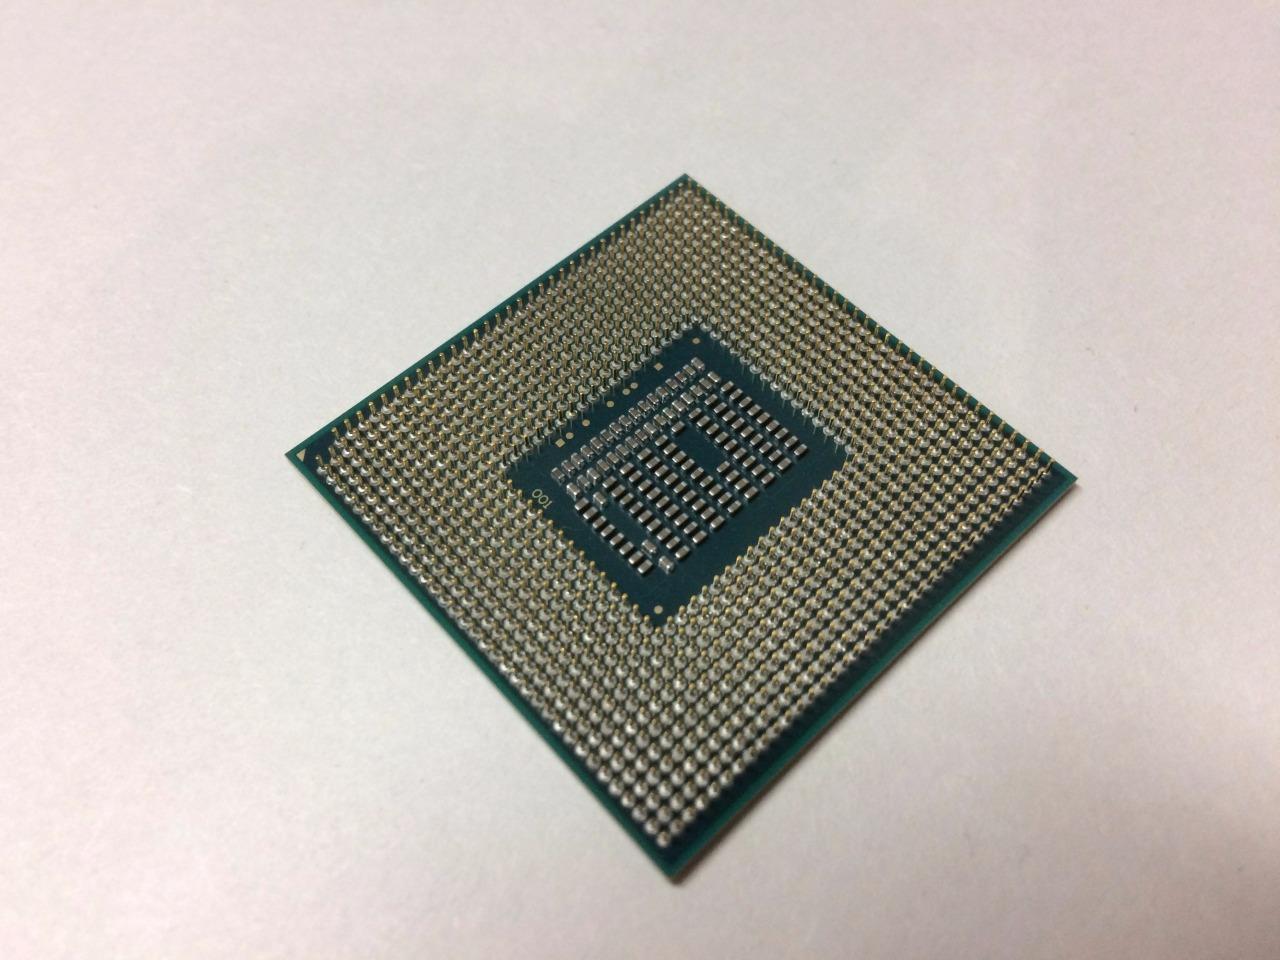 Игровой процессор сокет. Intel Core i5 3230m. Intel Core i5 3230m чипсет. I5 3230m 2.6GHZ. Интел i3-3110m, i5-3230m, i7-3612qm.